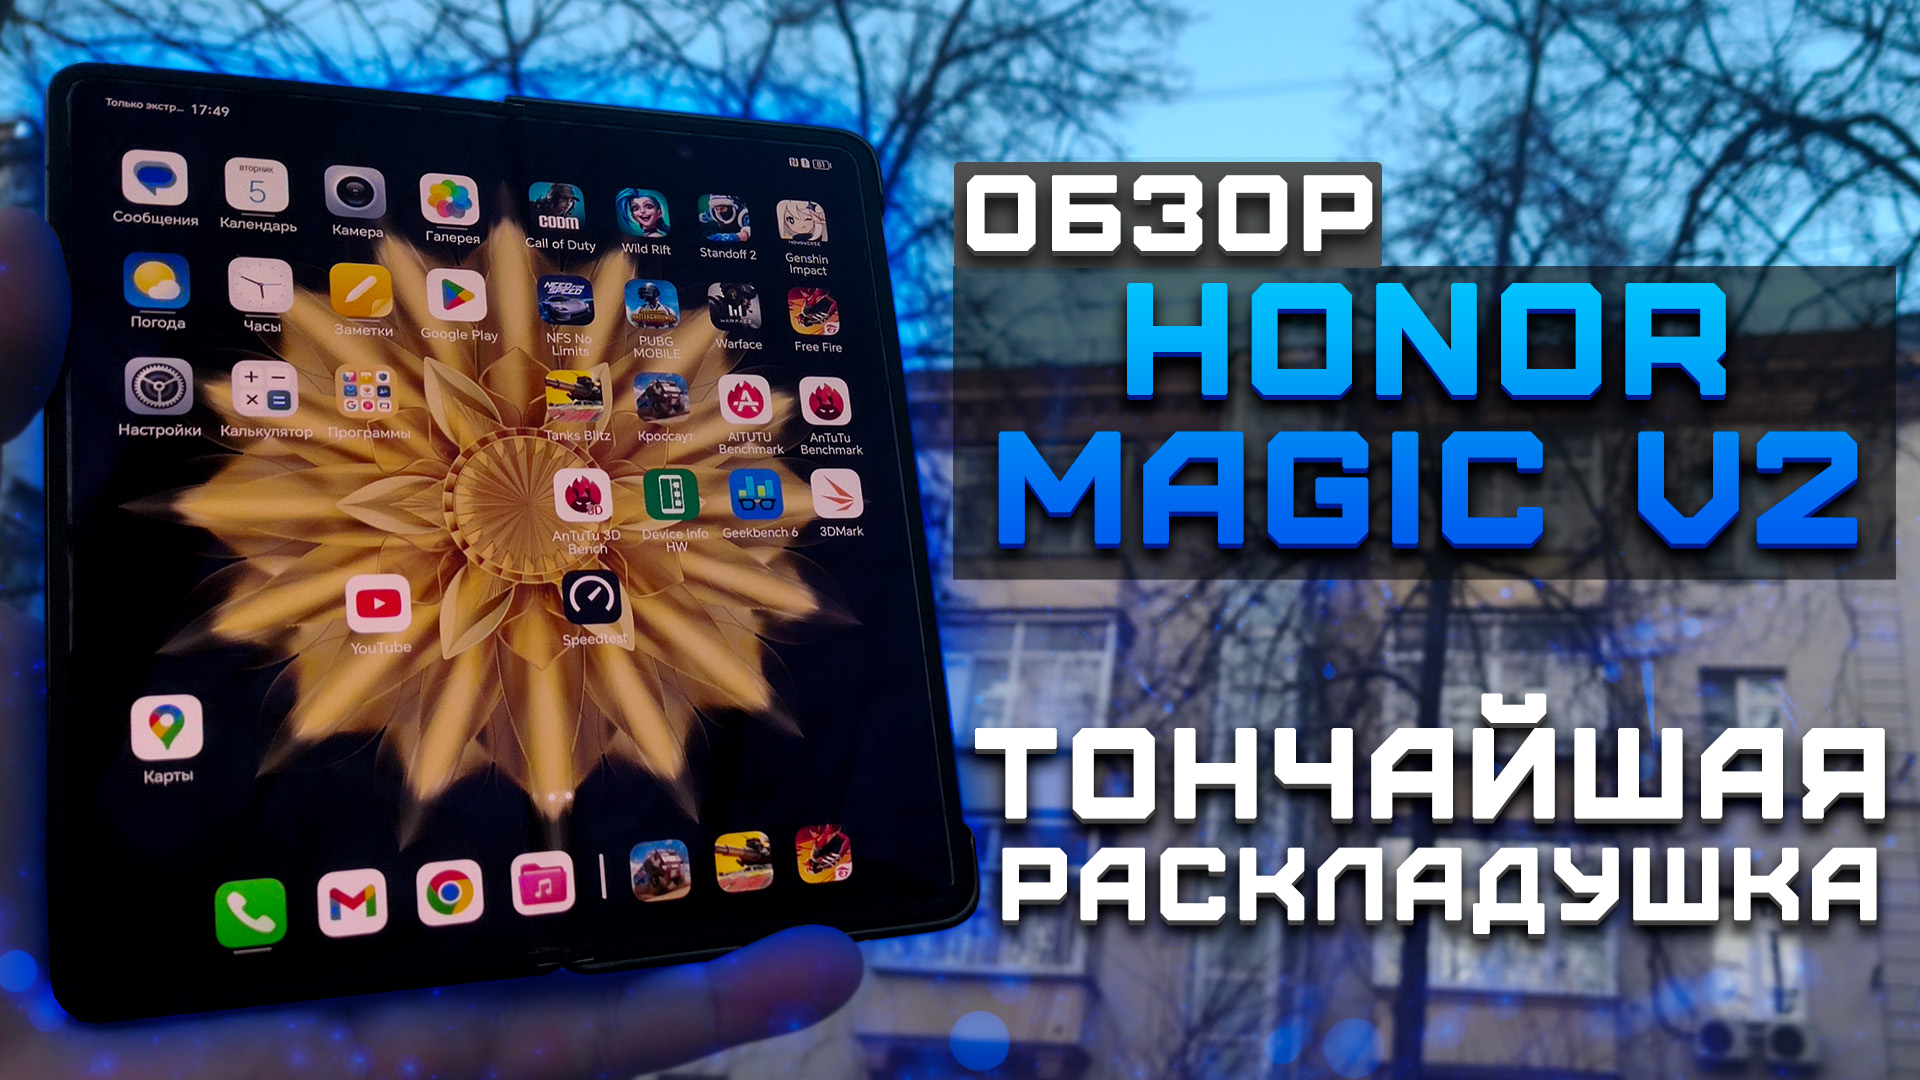 Обзор Honor Magic V2 | Тест телефона в 10 играх ► Тончайшая раскладушка